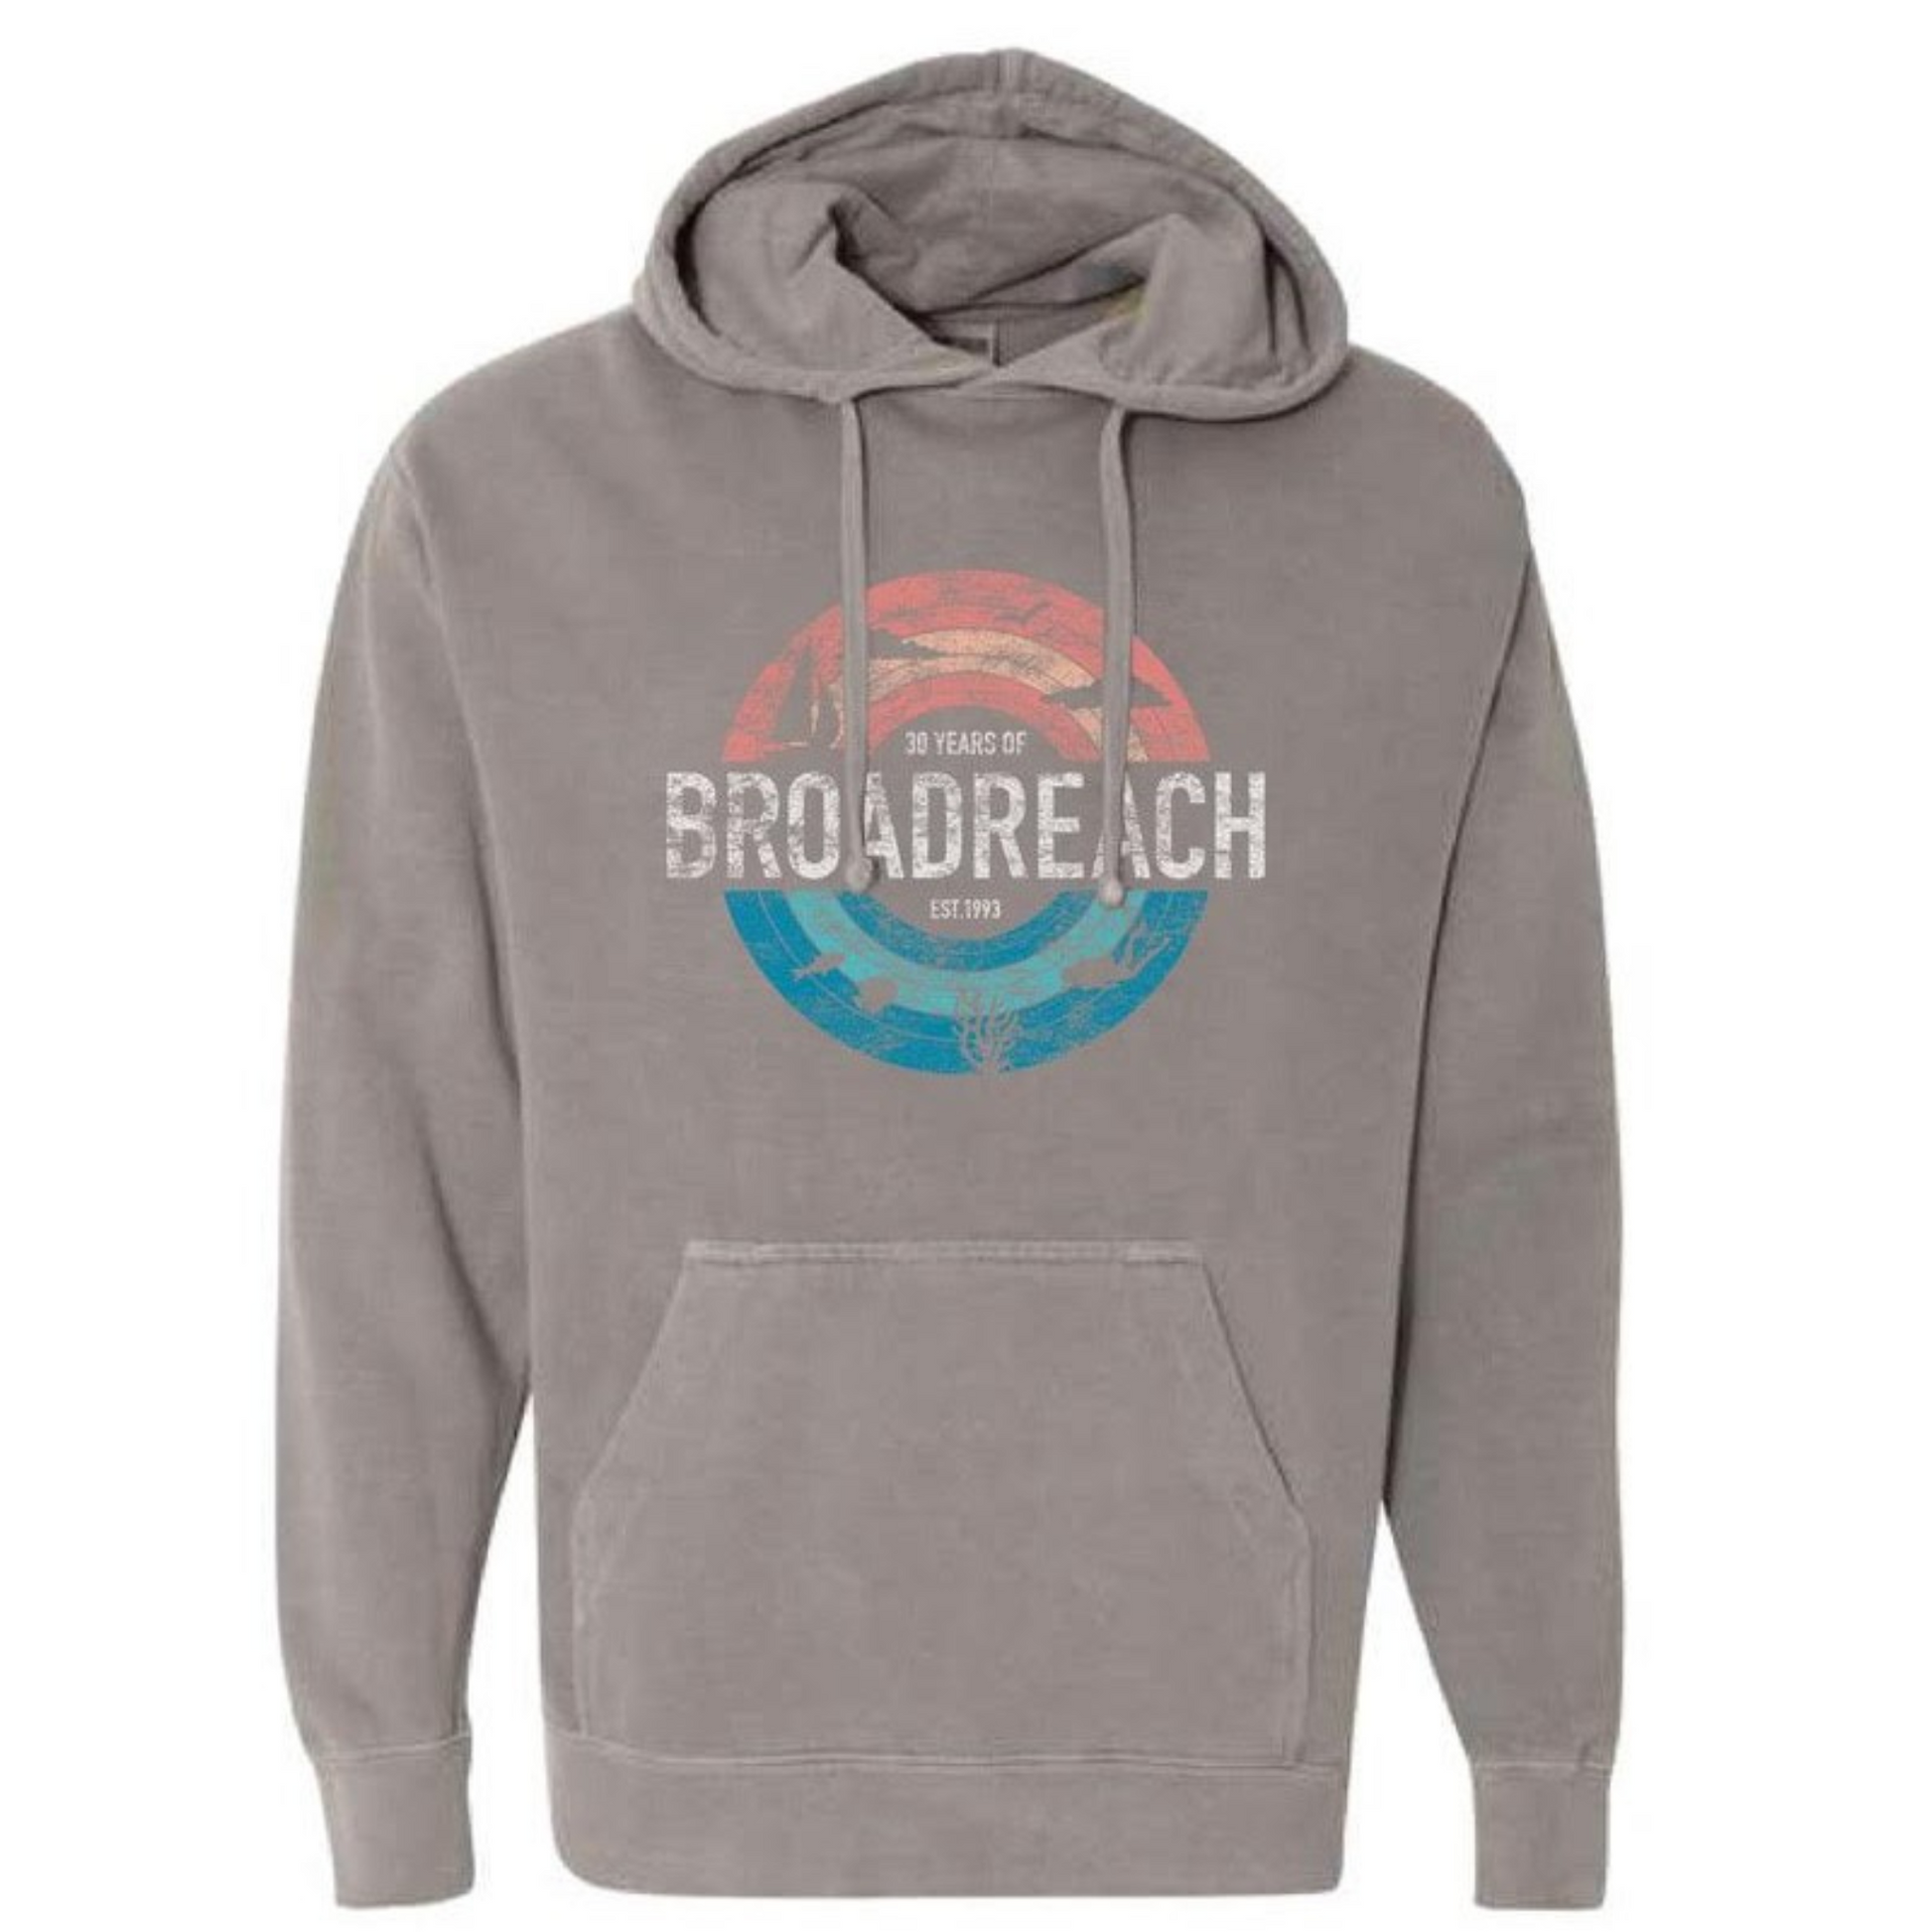 grey hooded sweatshirt reading 30 years of Broadreach